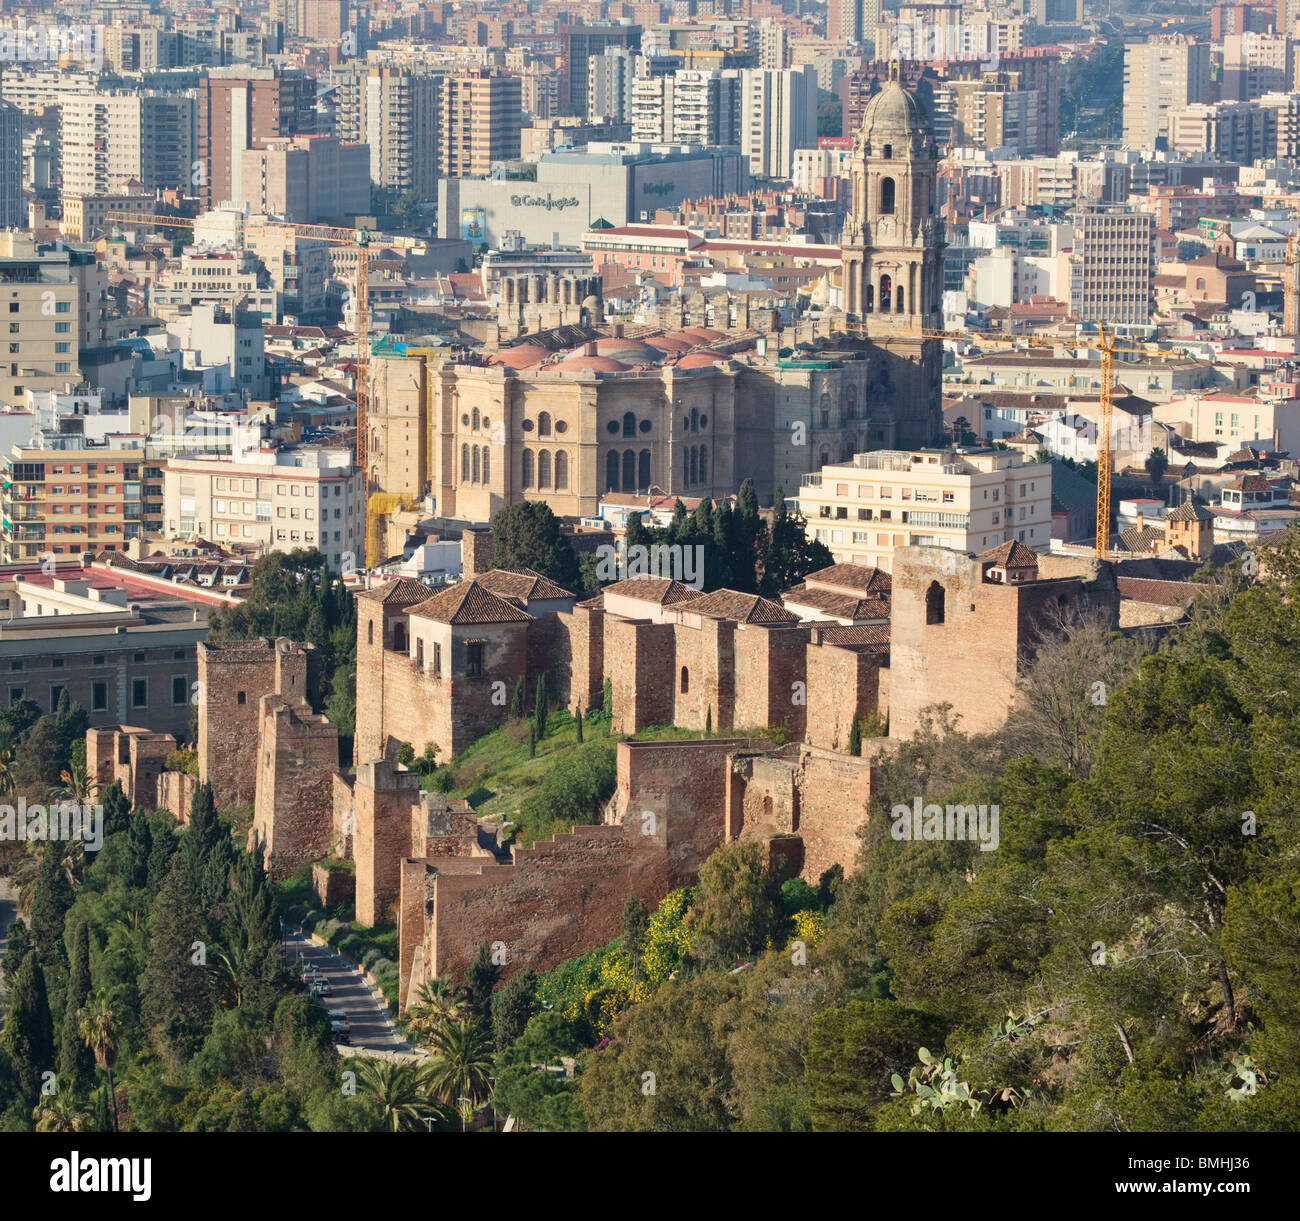 Malaga, la province de Malaga, Costa del Sol, Espagne ; vue sur la ville, la cathédrale et les murs de l'Alcazaba Banque D'Images